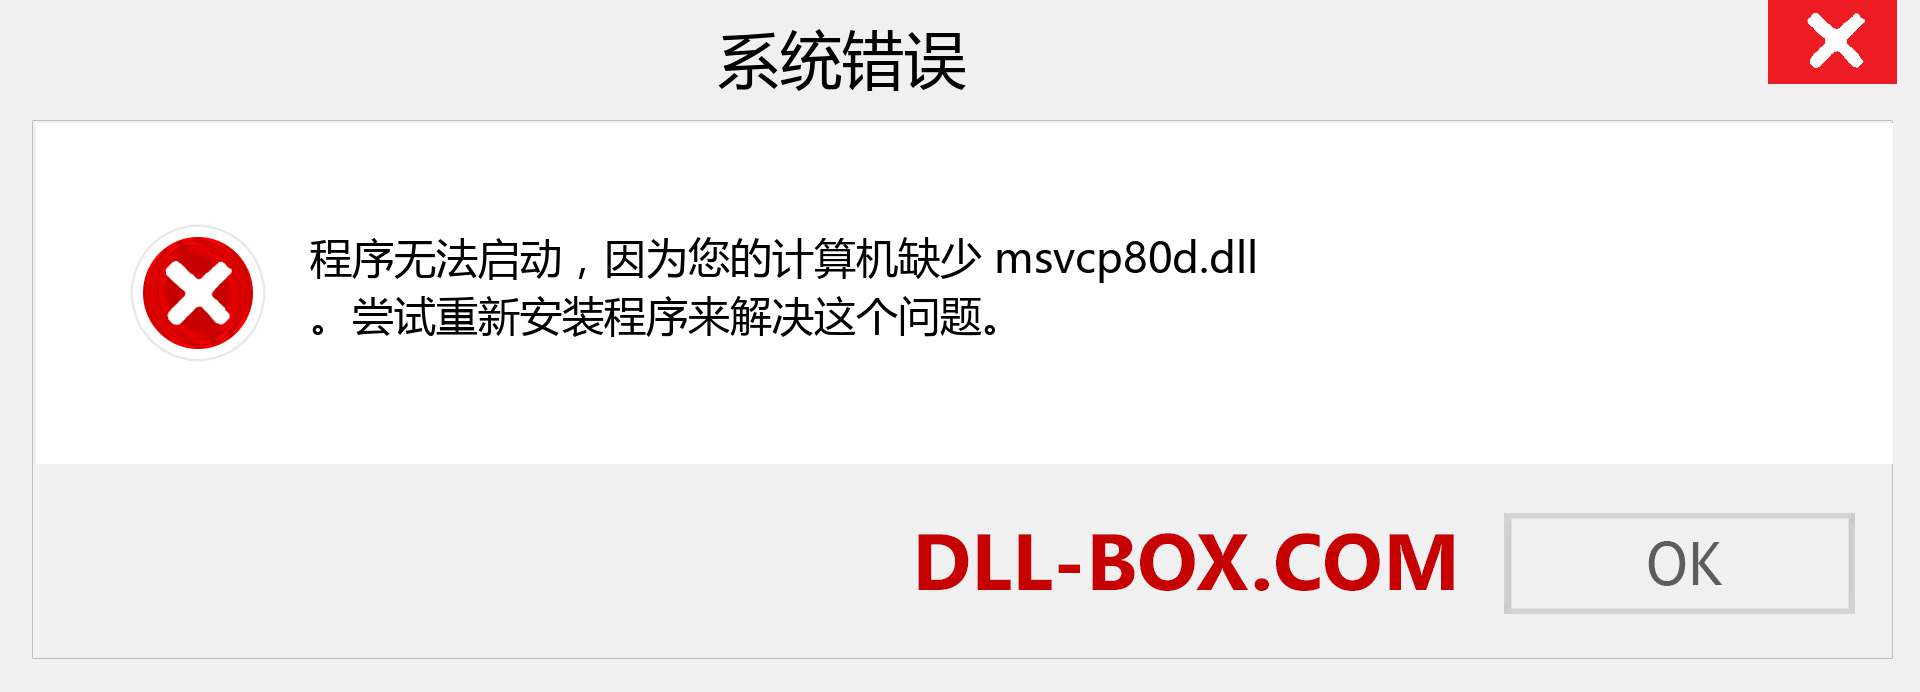 msvcp80d.dll 文件丢失？。 适用于 Windows 7、8、10 的下载 - 修复 Windows、照片、图像上的 msvcp80d dll 丢失错误